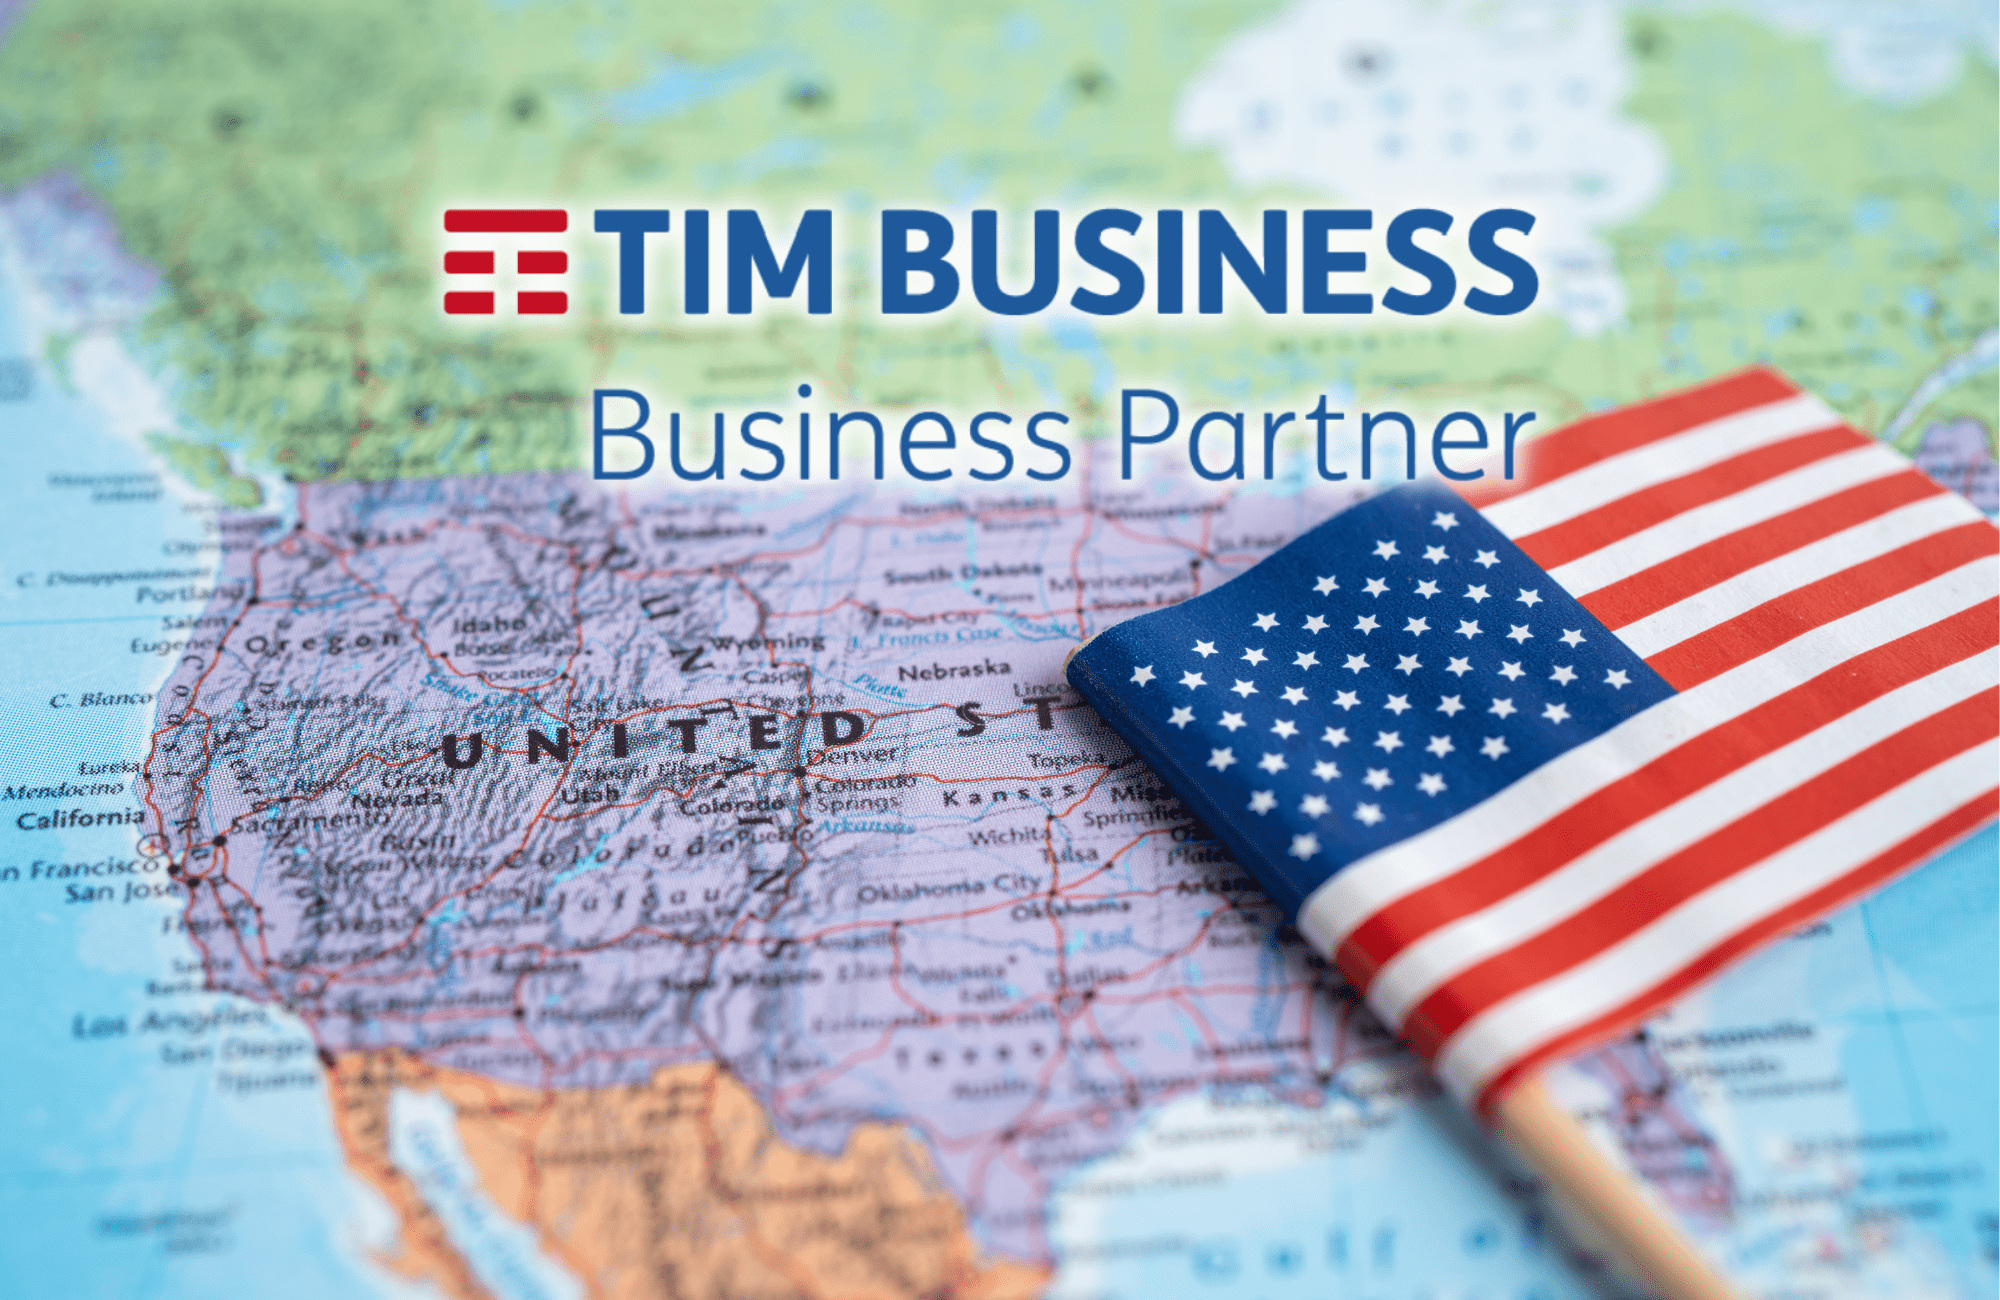 Tim offre tariffe vantaggiose per chiamare negli Stati Uniti: scopri l’offerta!